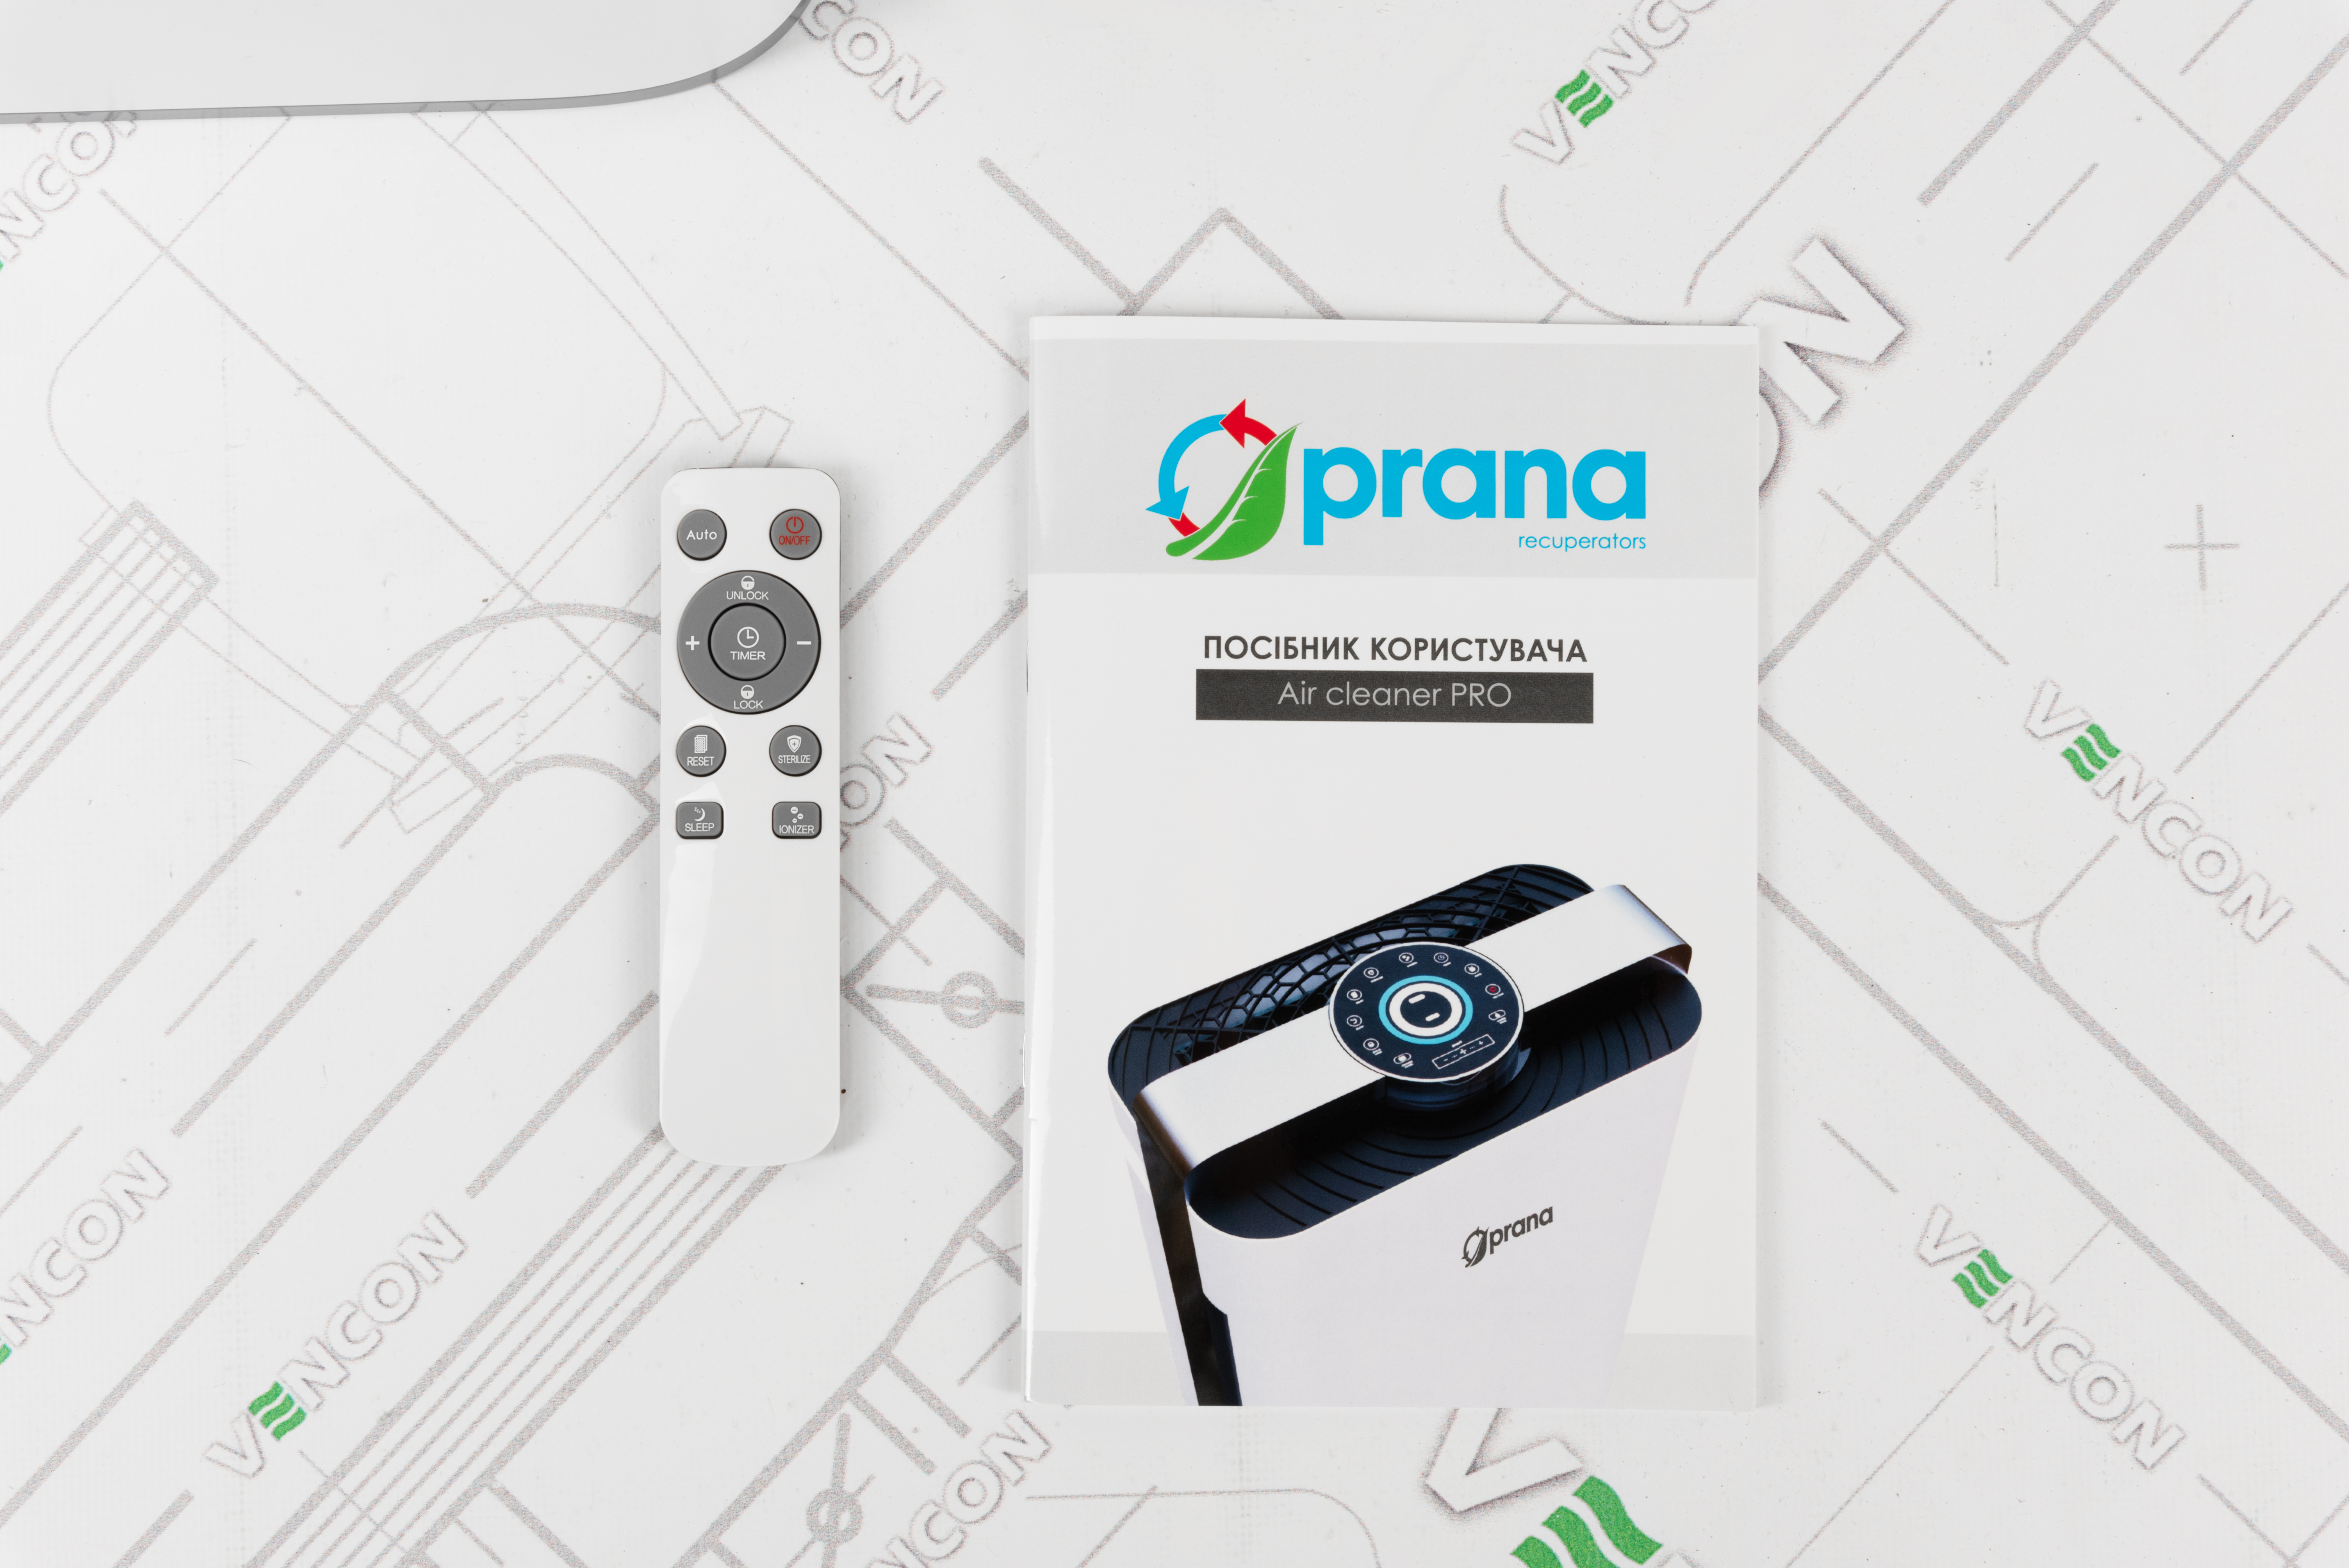 фото продукта Prana Air Cleaner Pro - 24